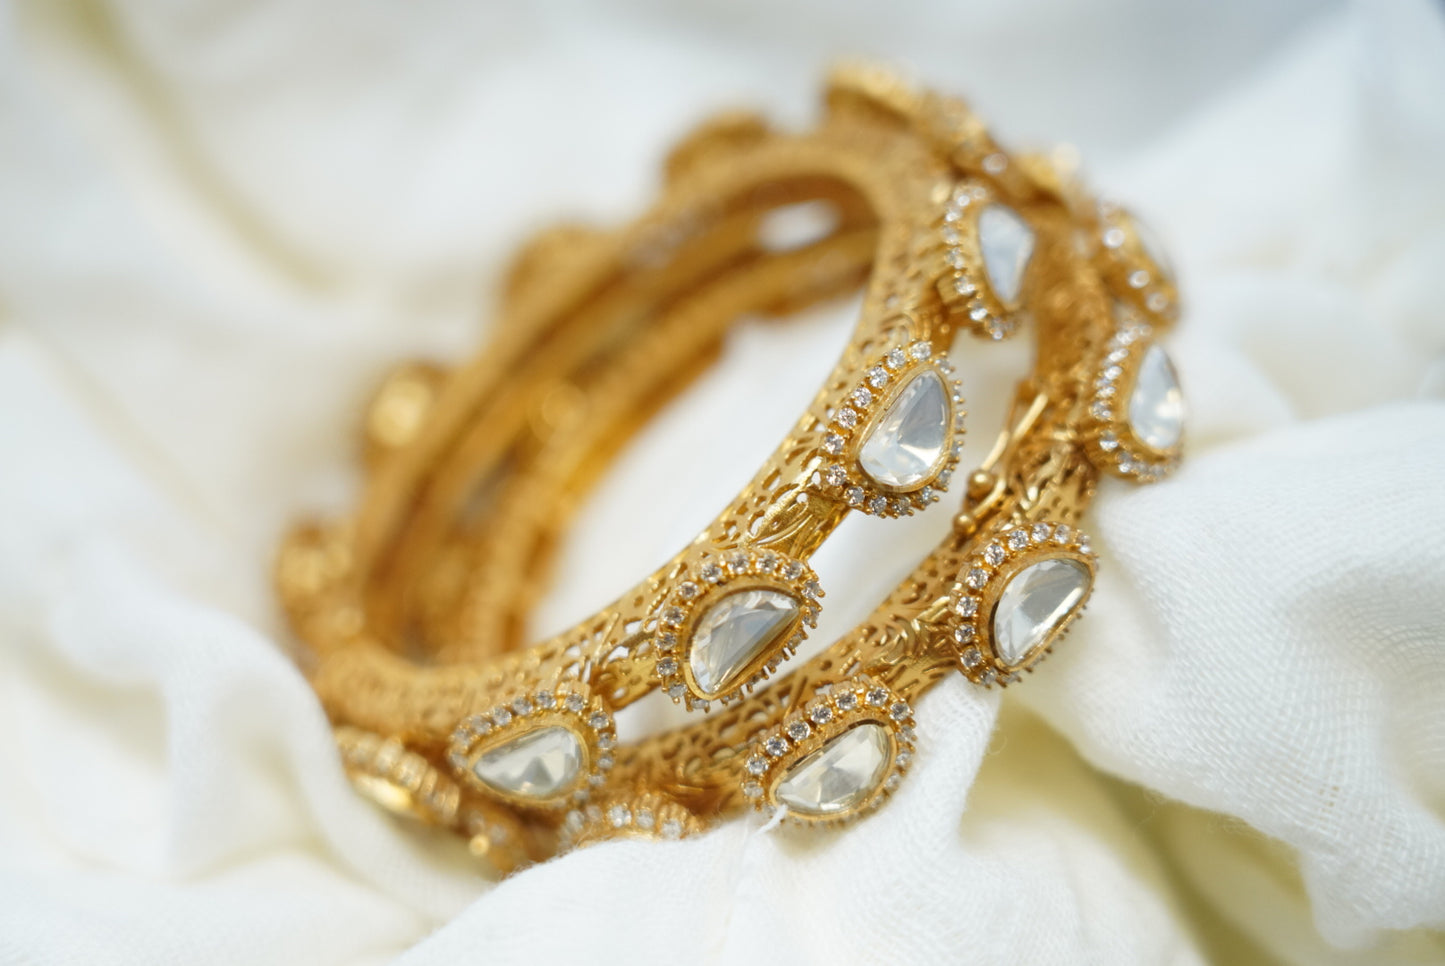 White Stones Gold Plated Bracelet